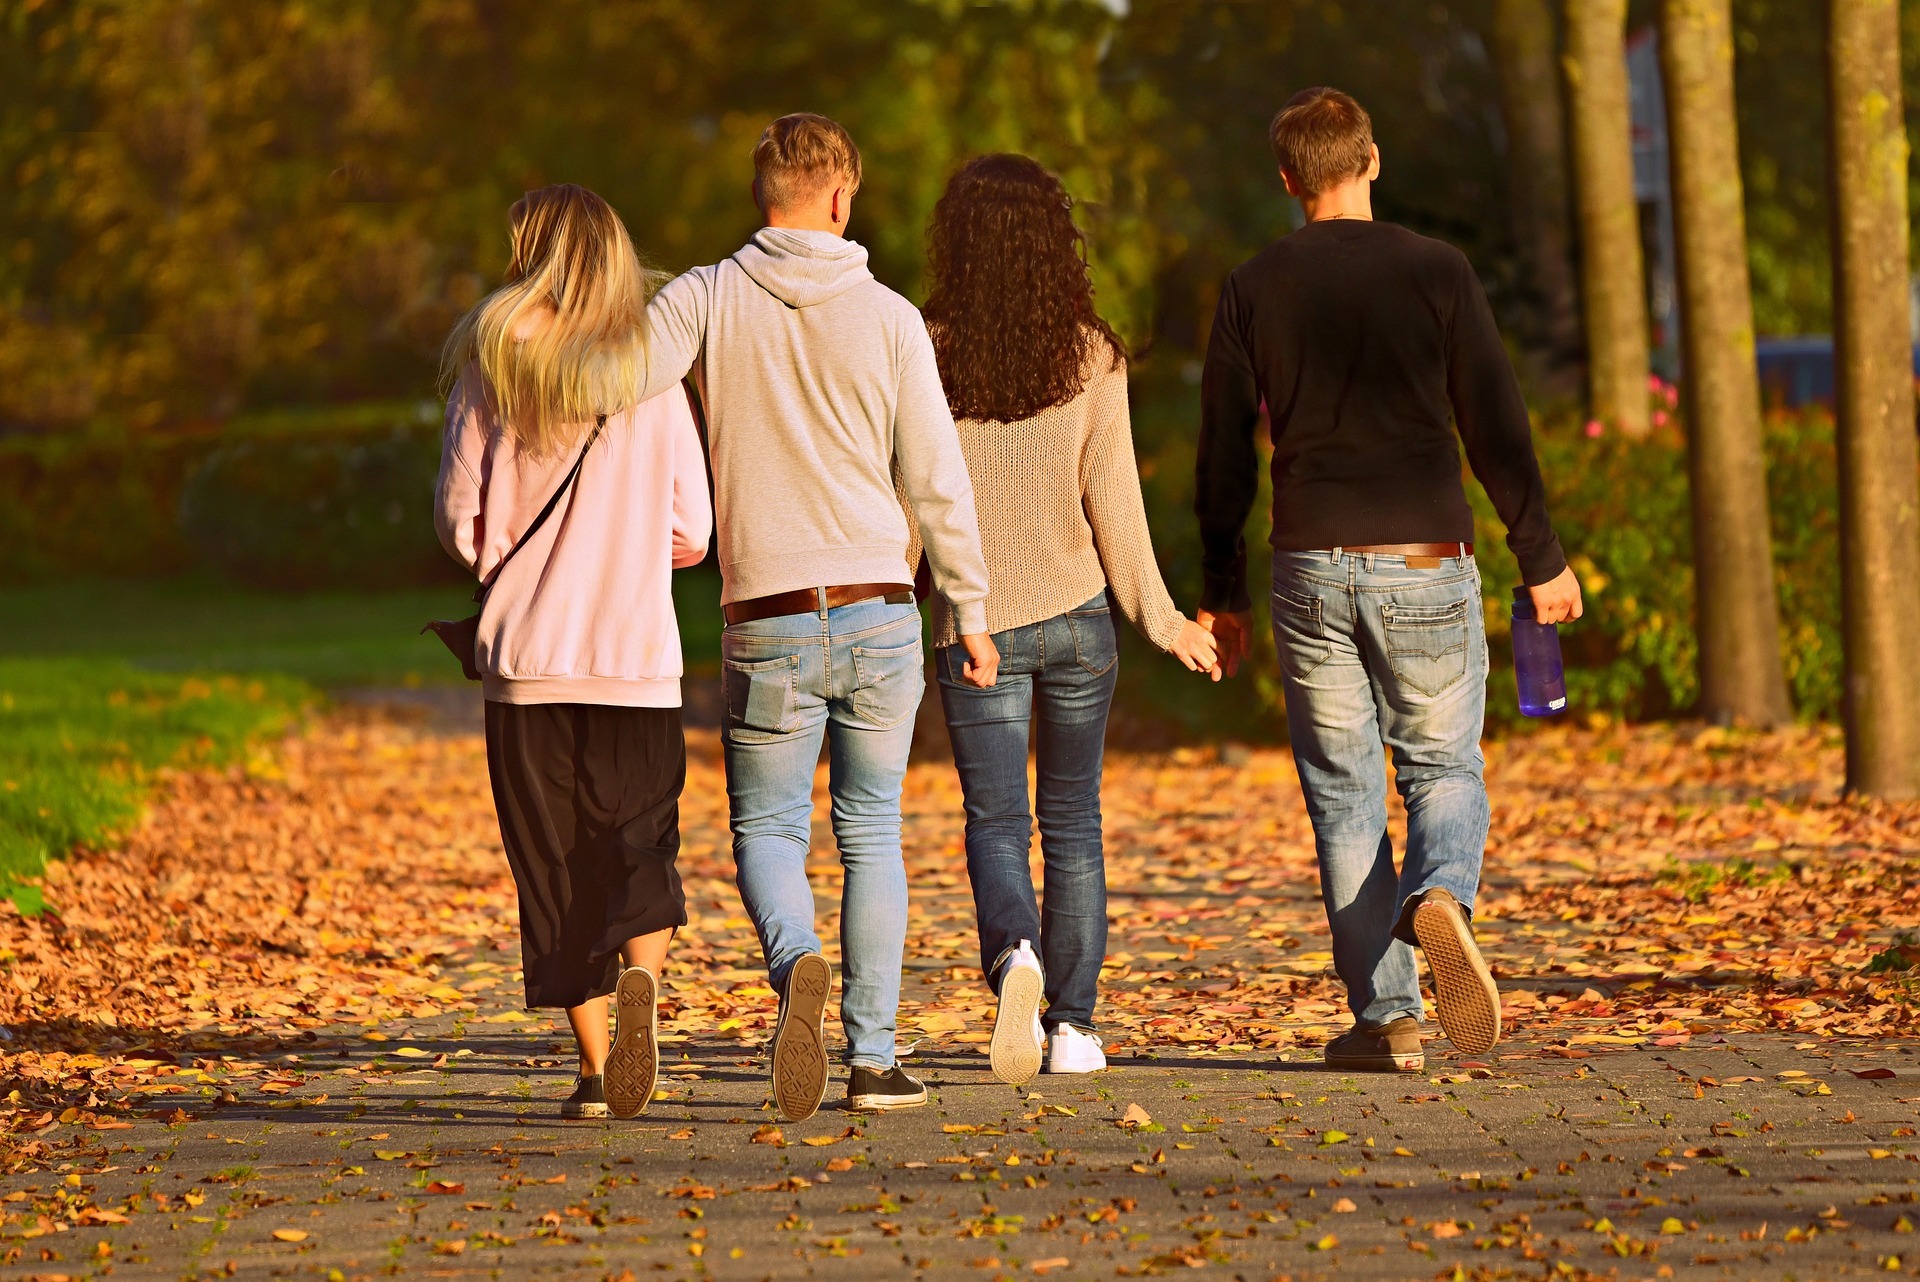 Caminar con amigos o familiares es una buena forma de hacerlo más llevadero